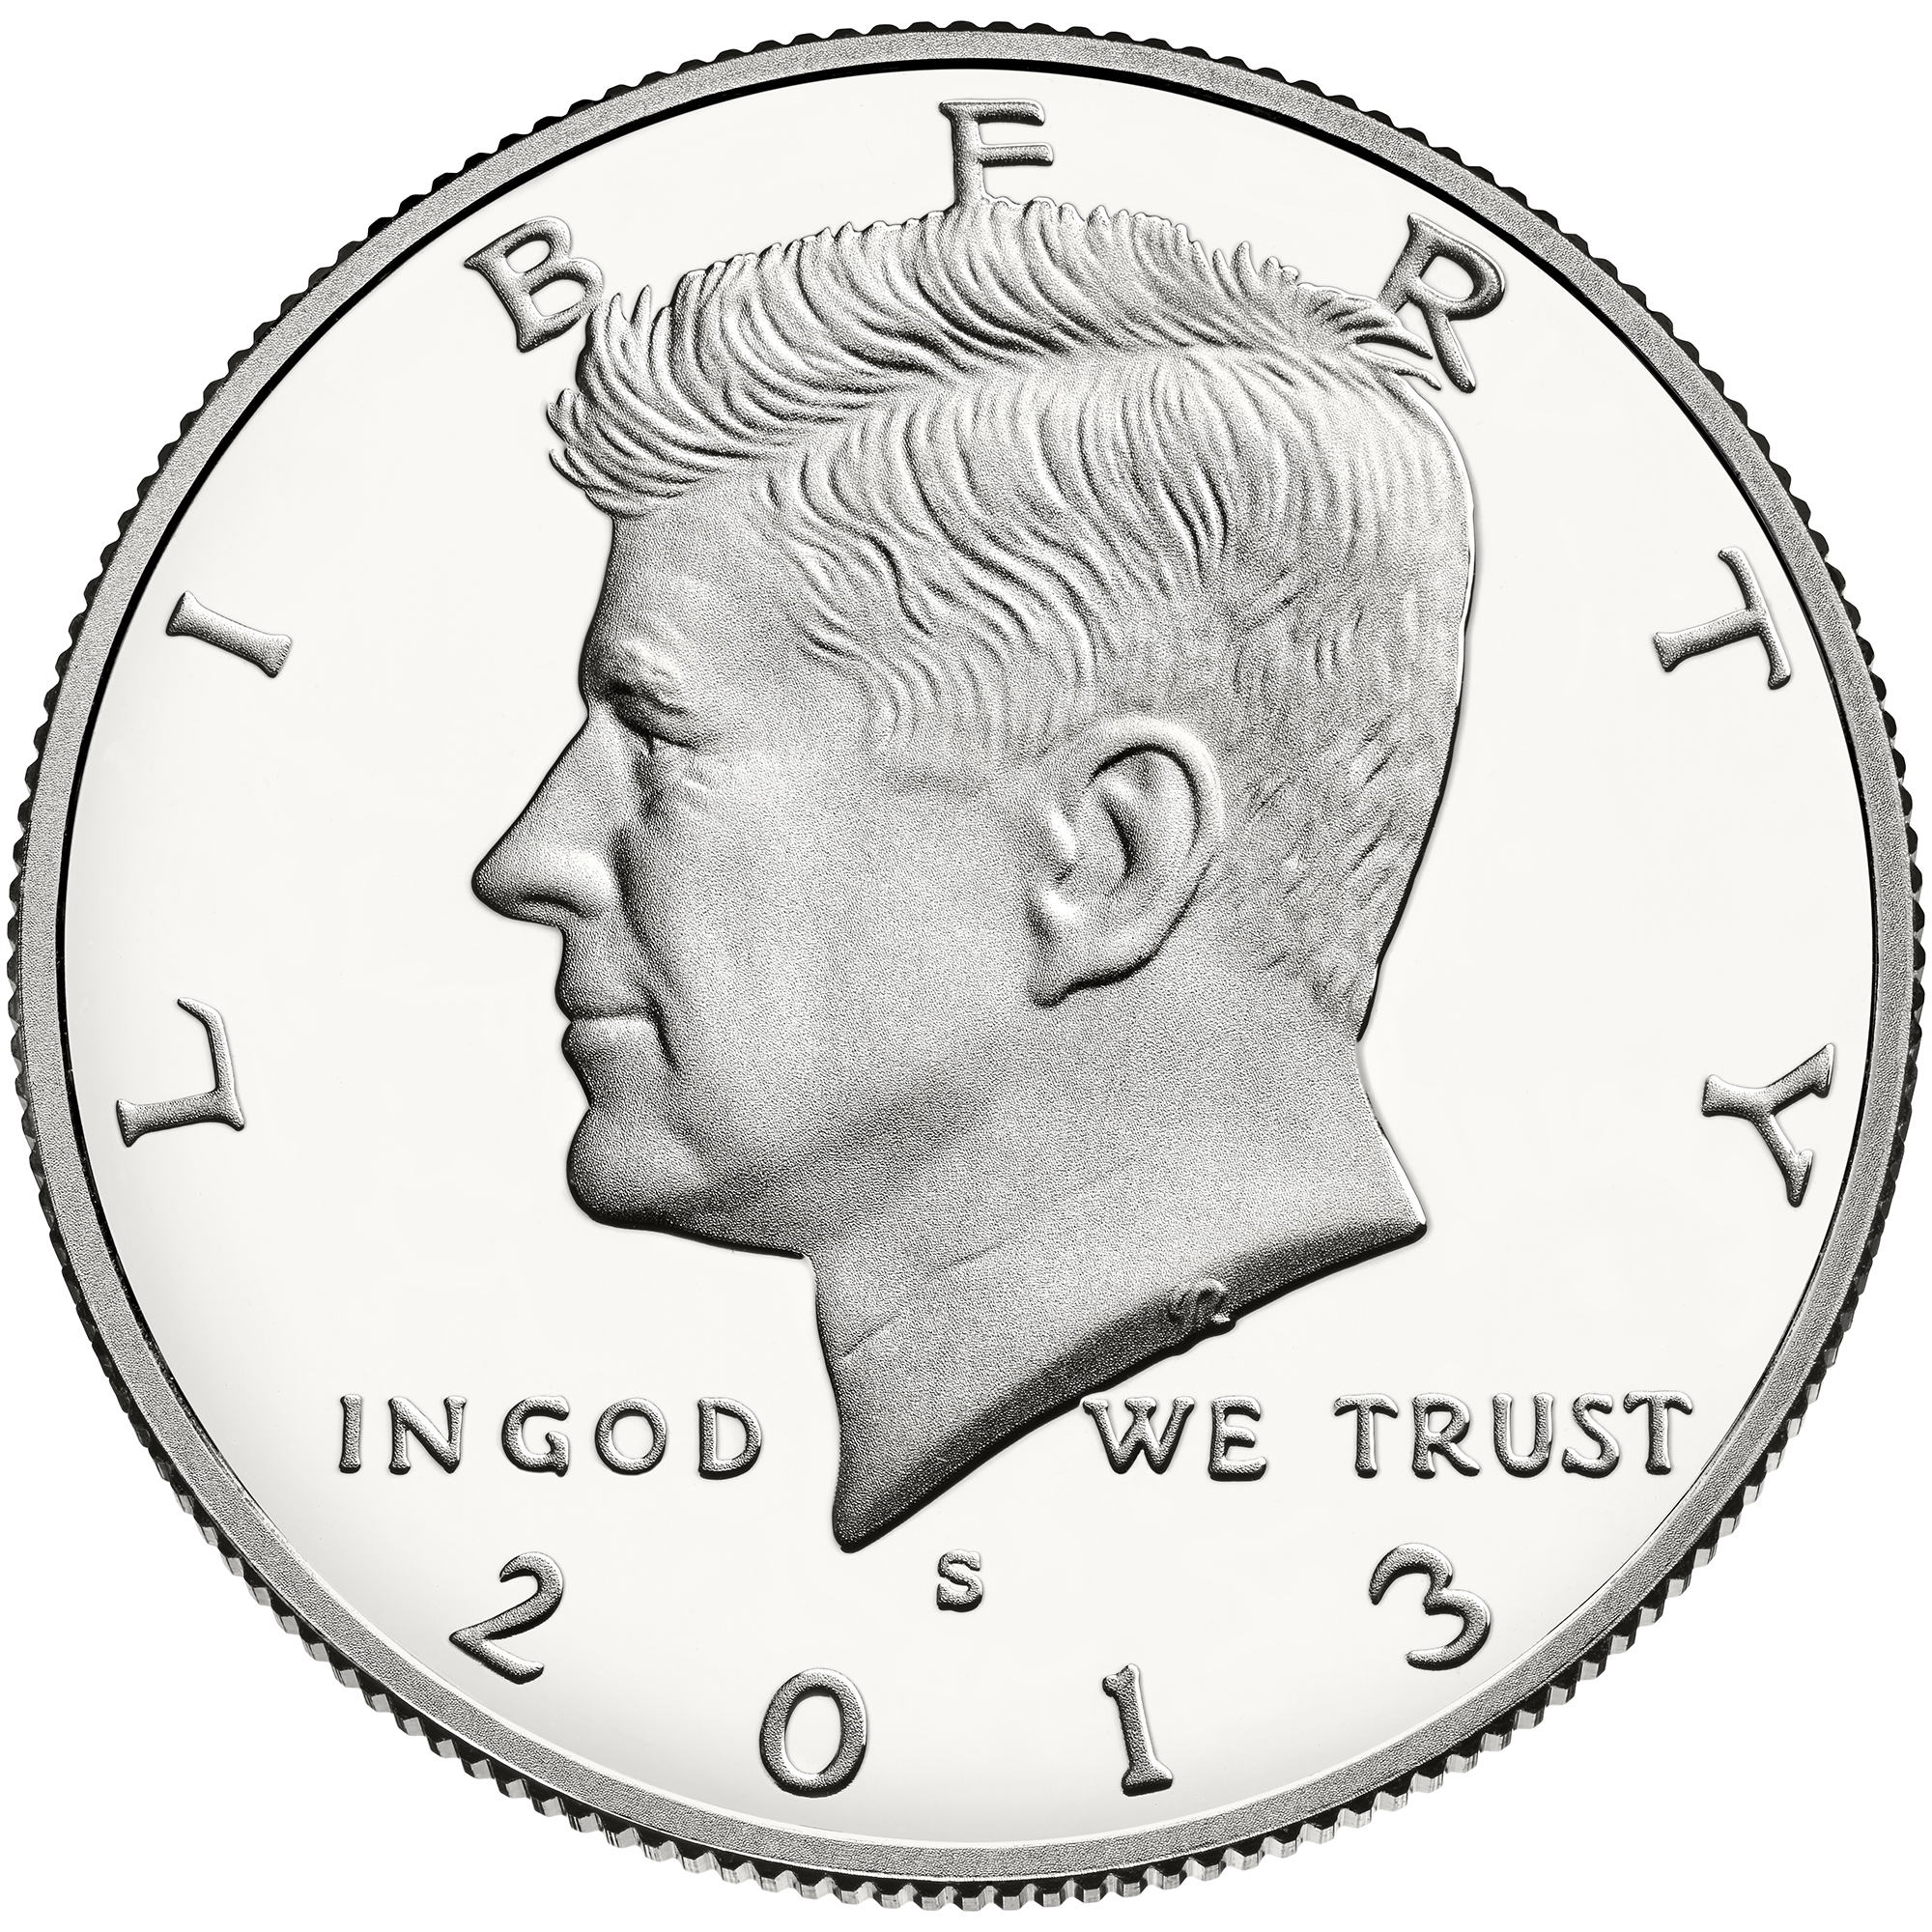 US 1/2 Dollar - Half Dollar 1974 S